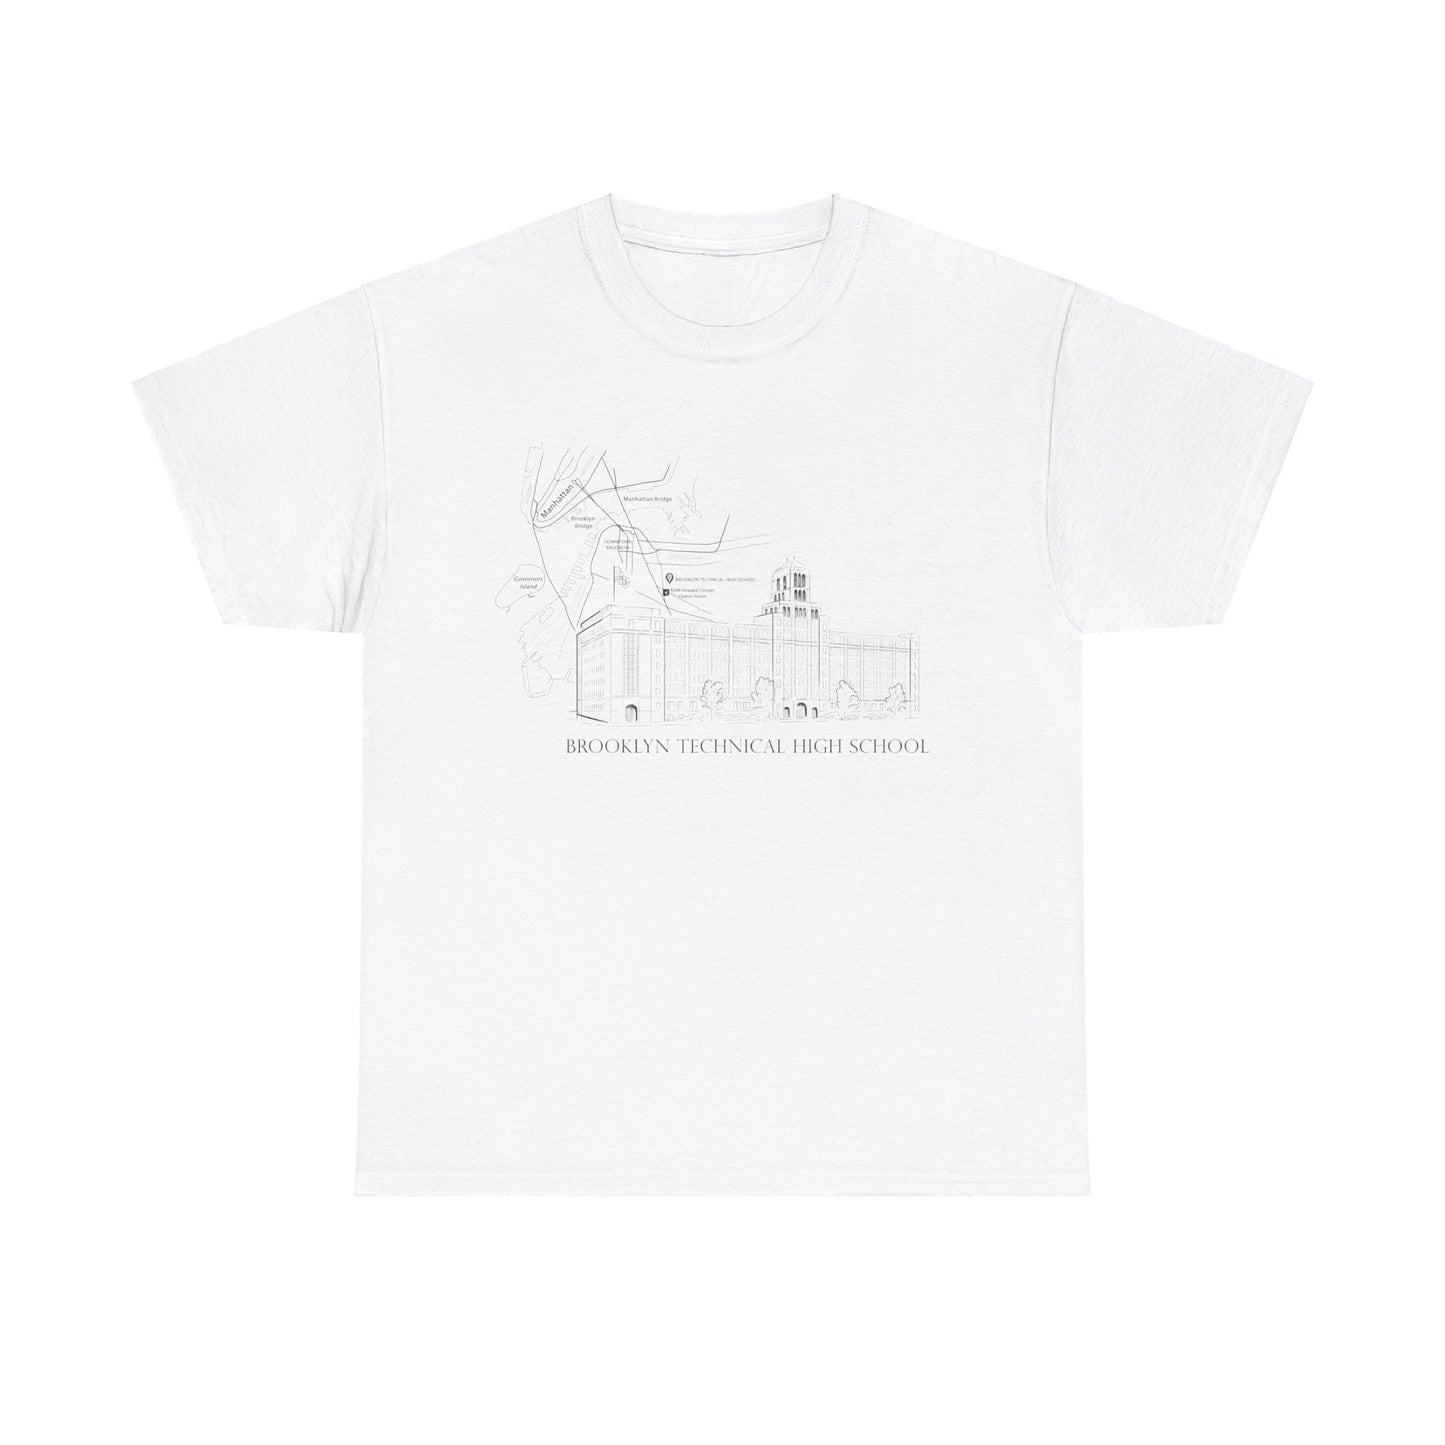 Boutique - Monochrome Building & Map - Men's Heavy Cotton T-Shirt